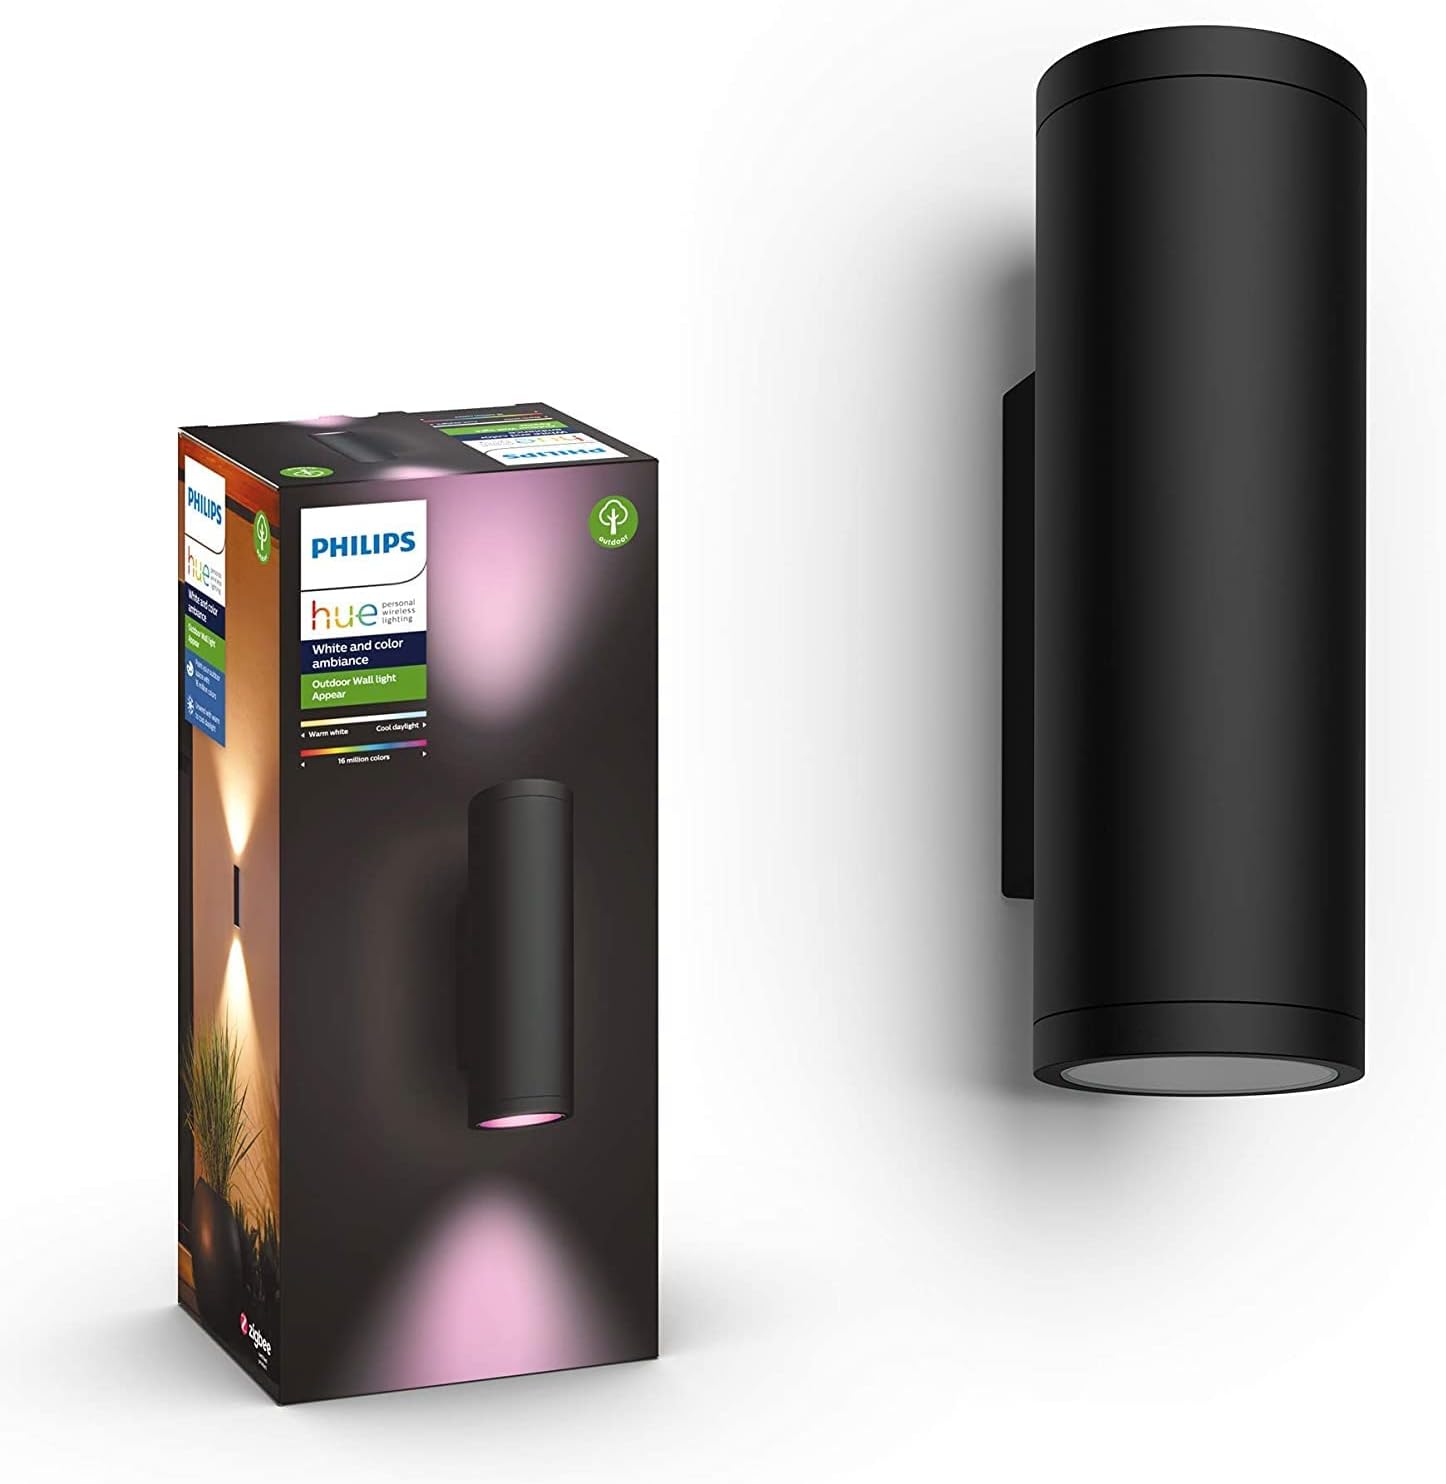 Philips Hue White & Color Ambiance Appear Außenwandleuchte schwarz 710lm, dimmbar, bis zu 16 Mio. Farben, steuerbar via App, kompatibel mit Amazon Alexa (Echo, Echo Dot)